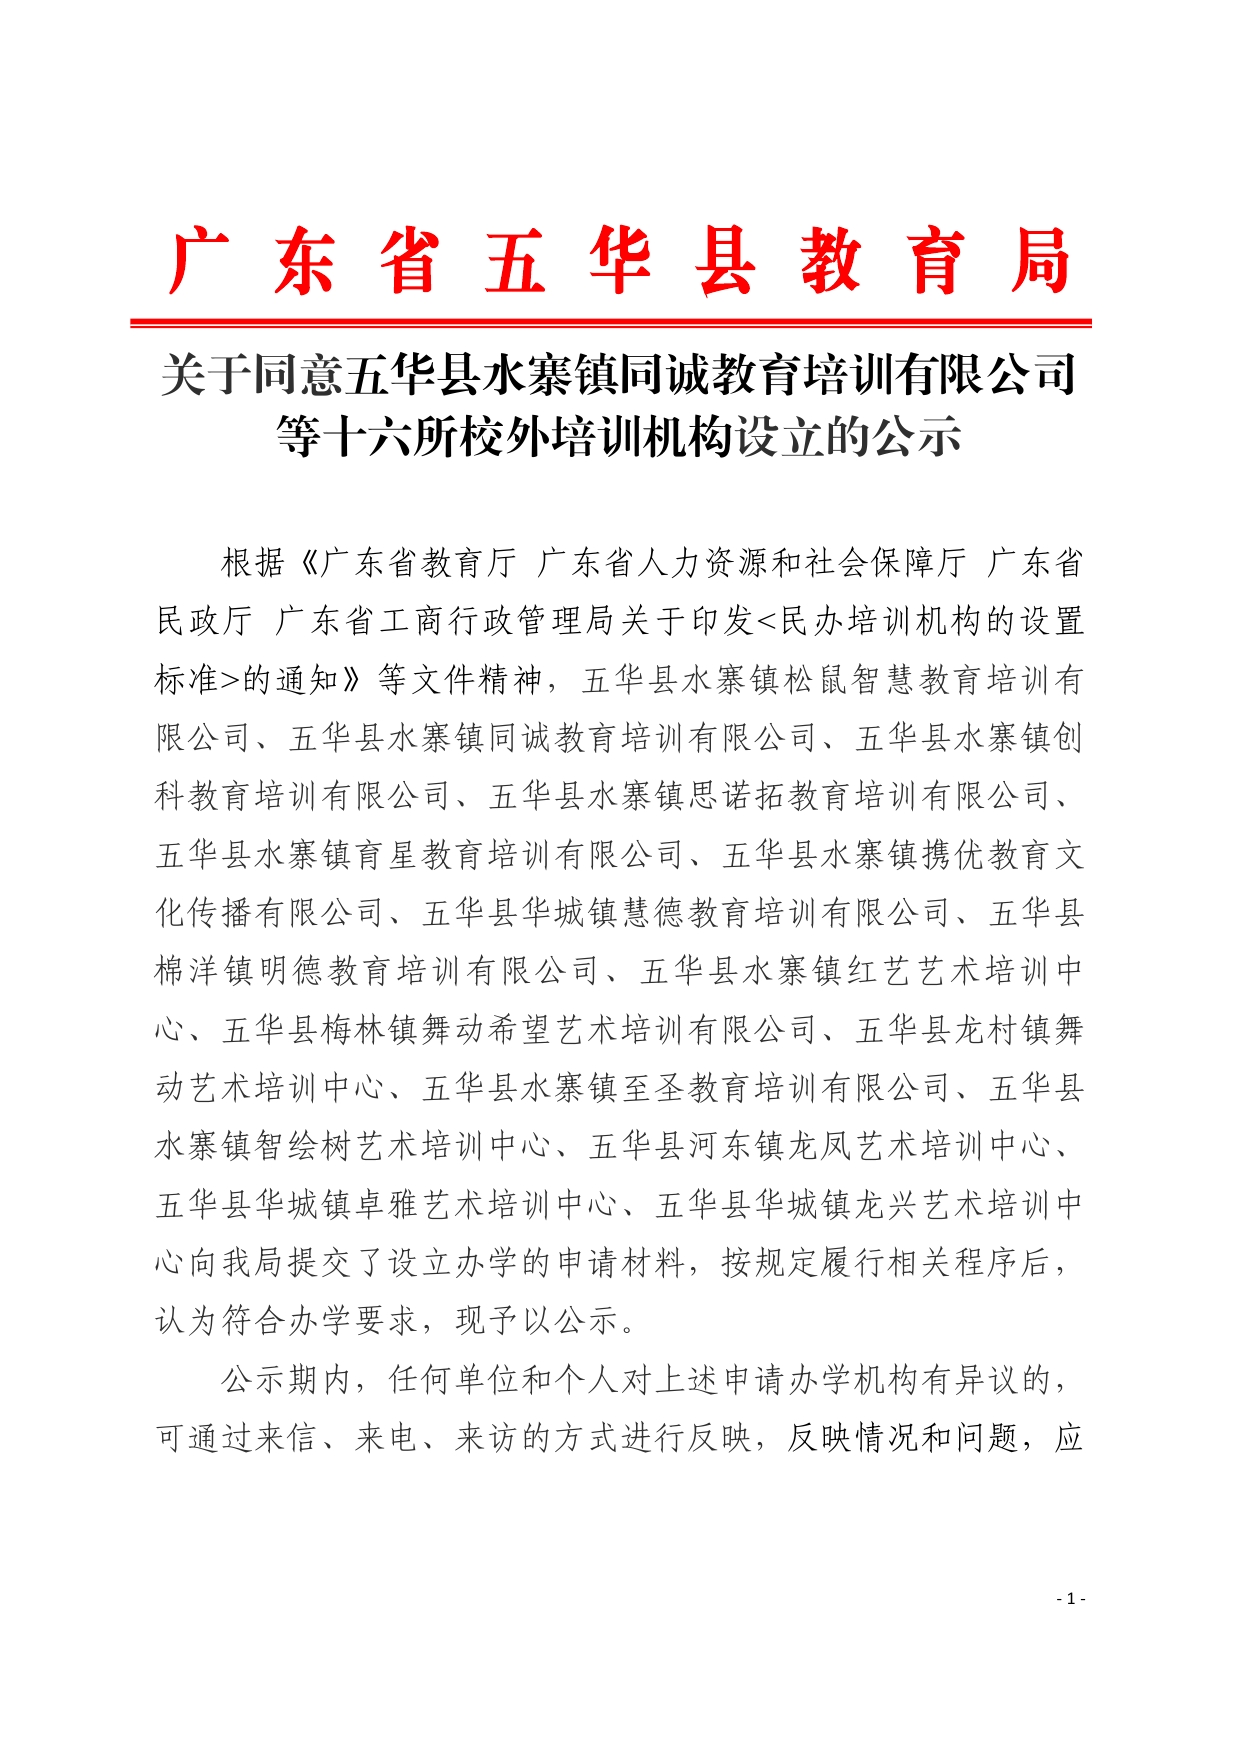 关于同意五华县水寨镇同诚教育培训有限公司等十六所校外培训机构设立的公示0000.jpg